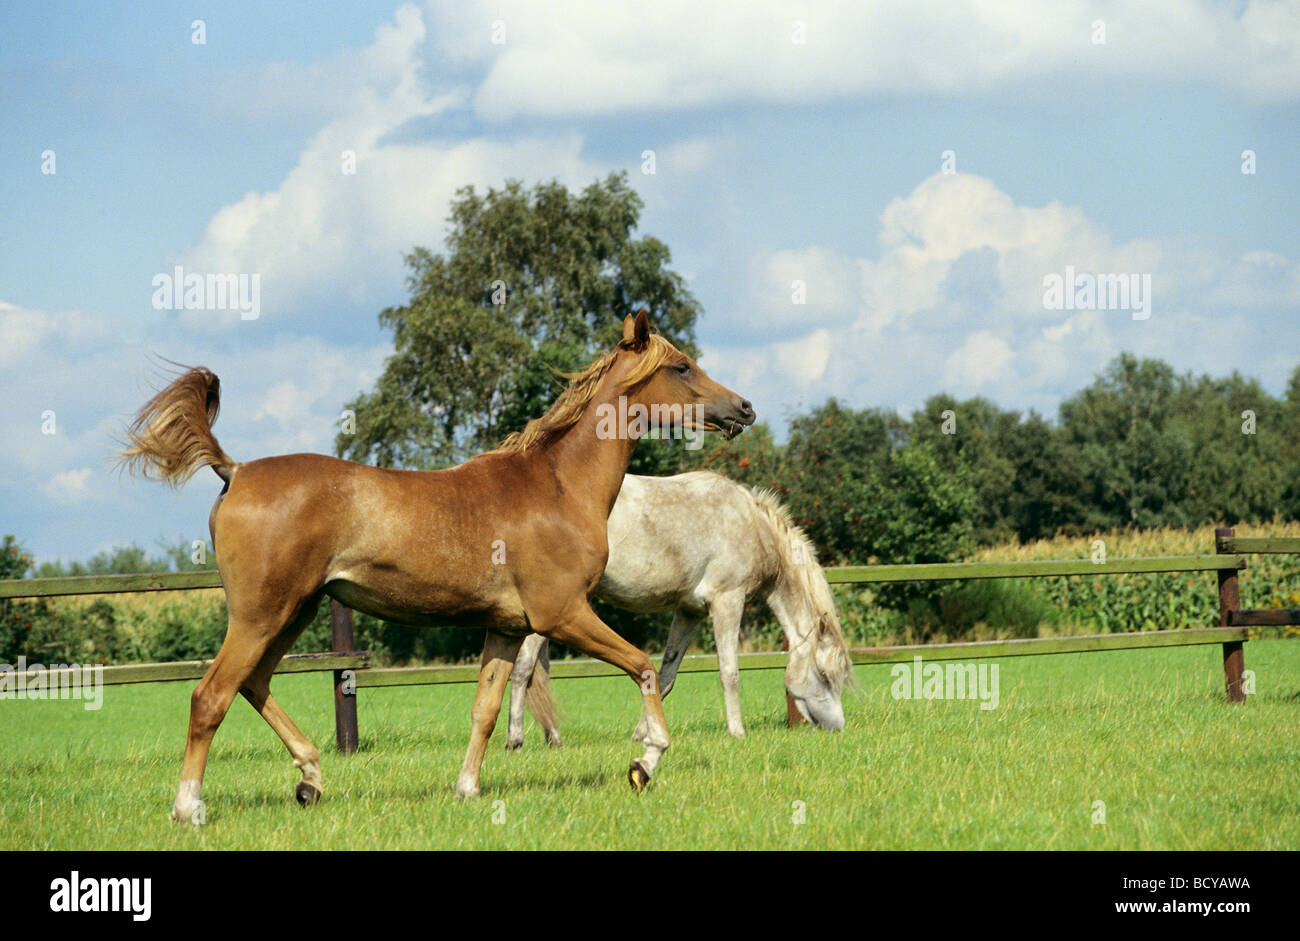 Deux chevaux arabes de l'asil on meadow Banque D'Images